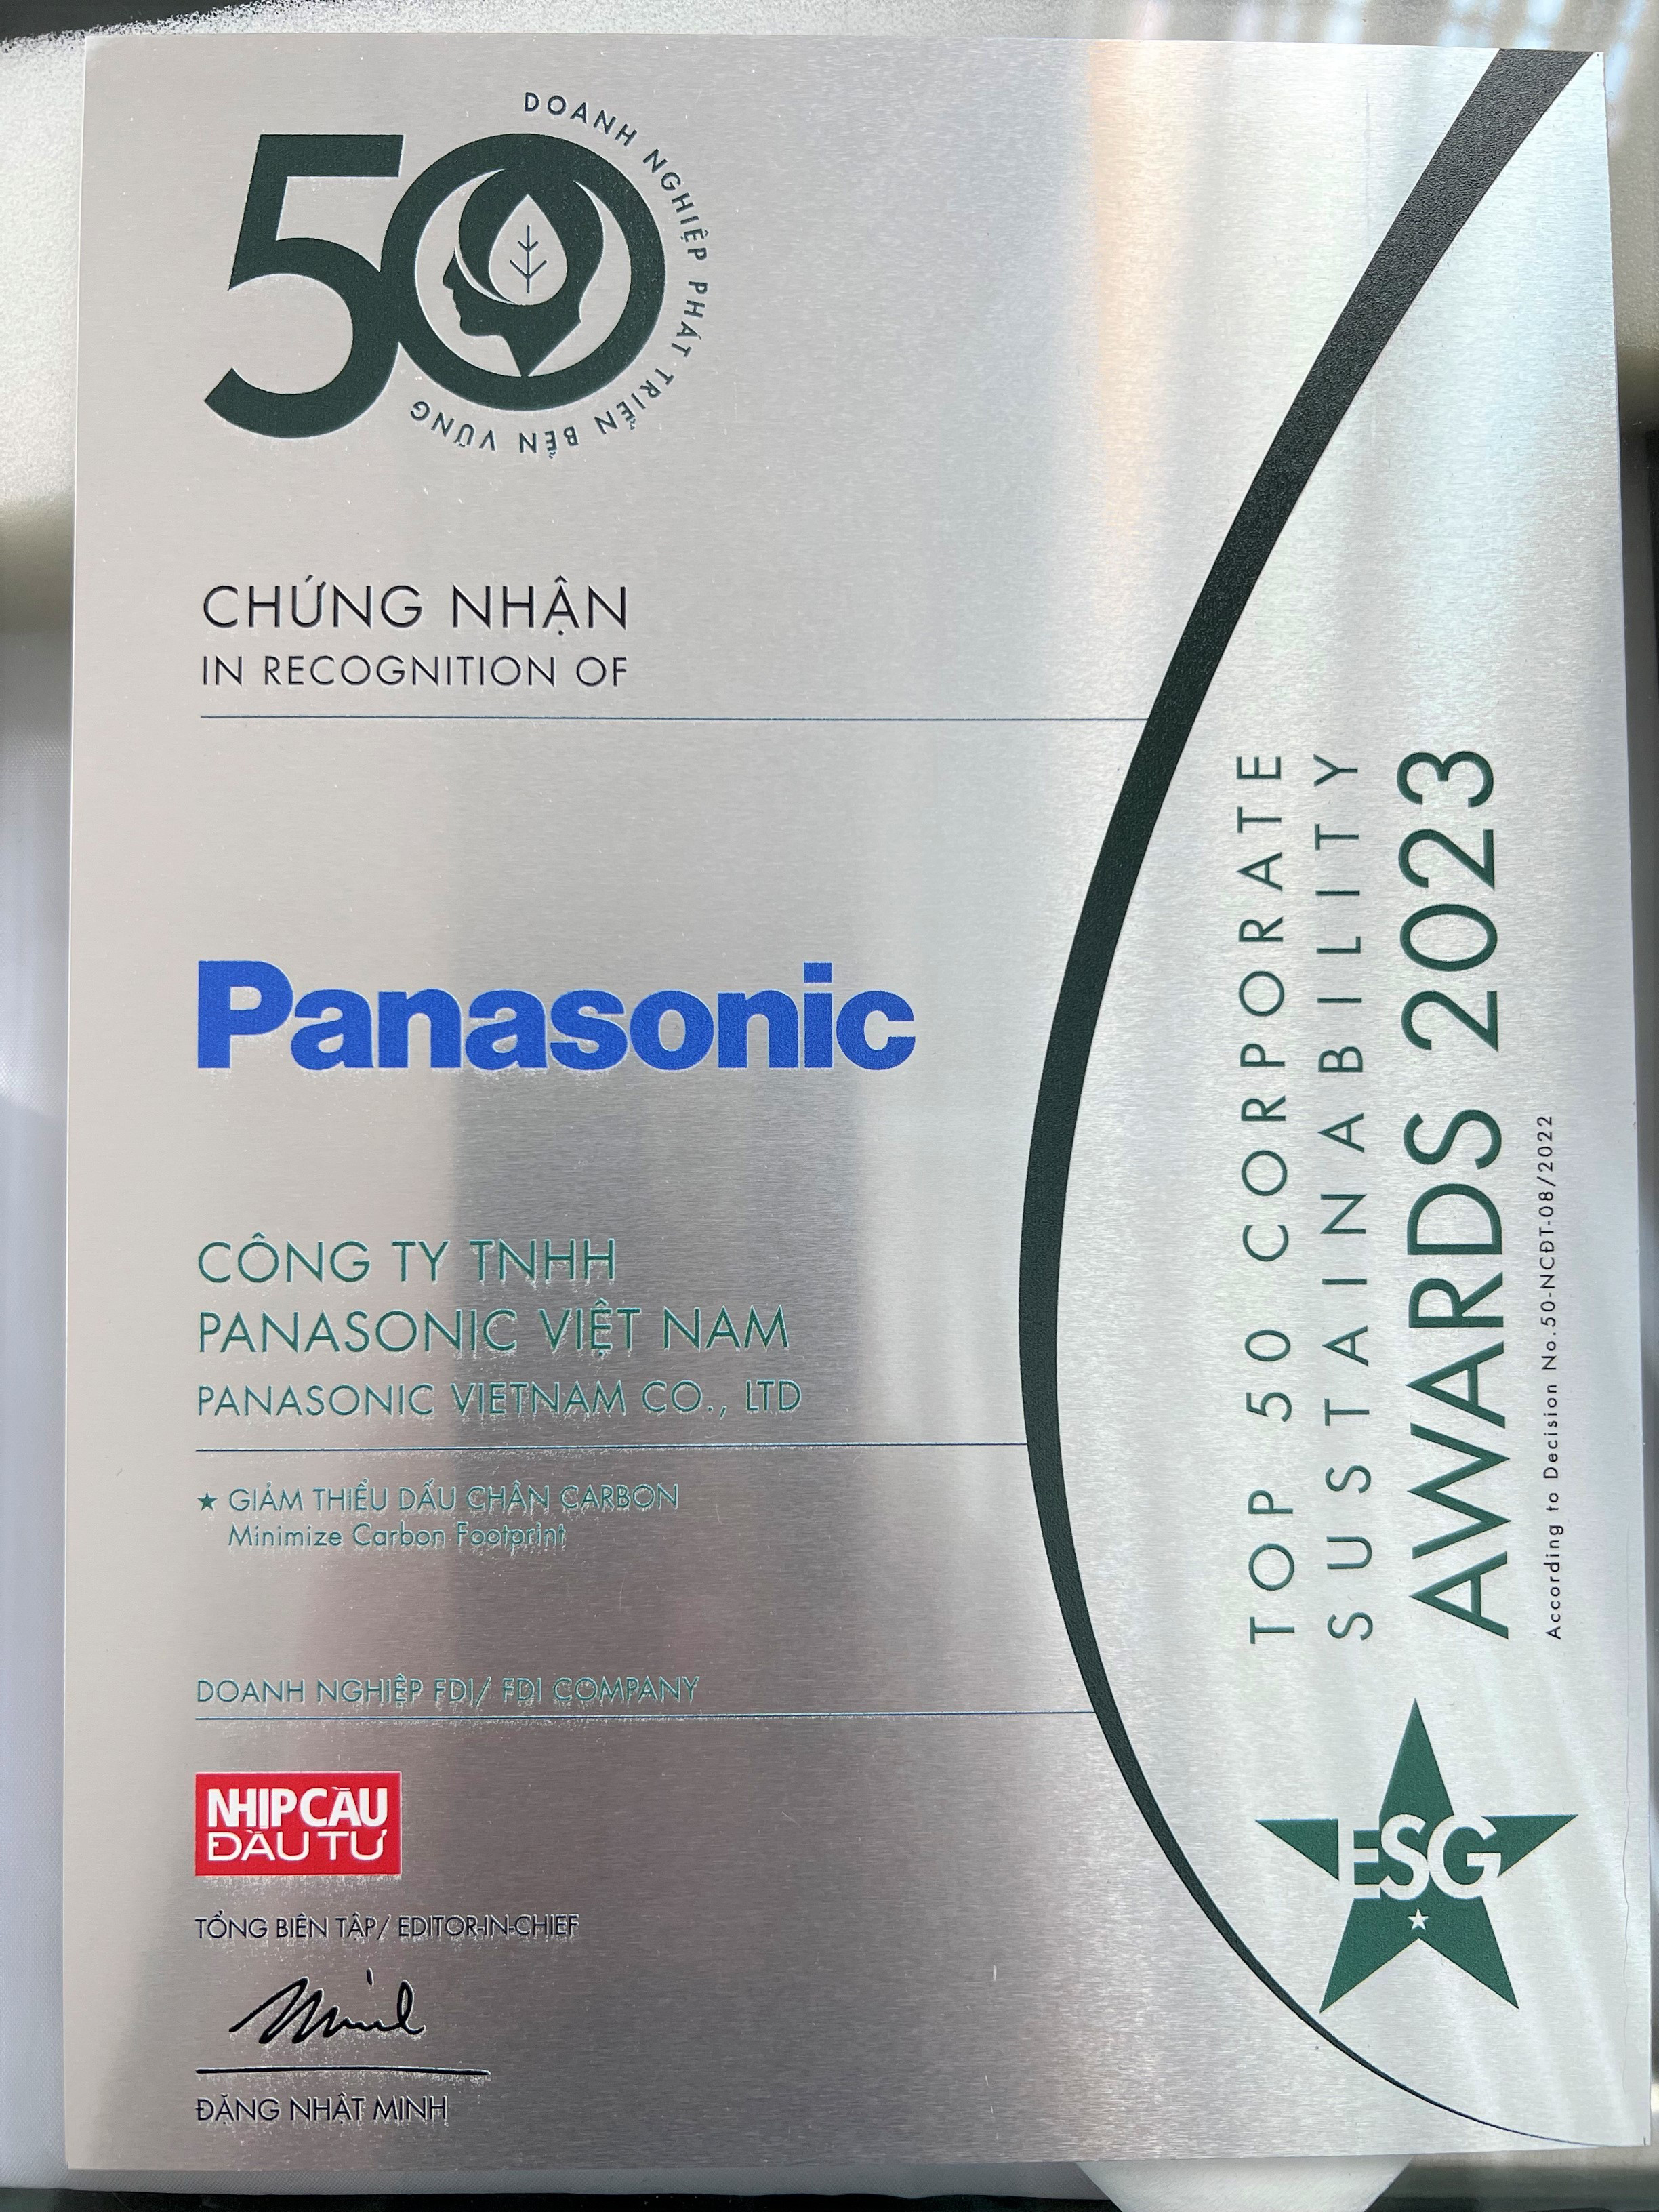 Panasonic được vinh danh là Doanh nghiệp phát triển bền vững tiêu biểu với nỗ lực giảm thiểu phát thải carbon